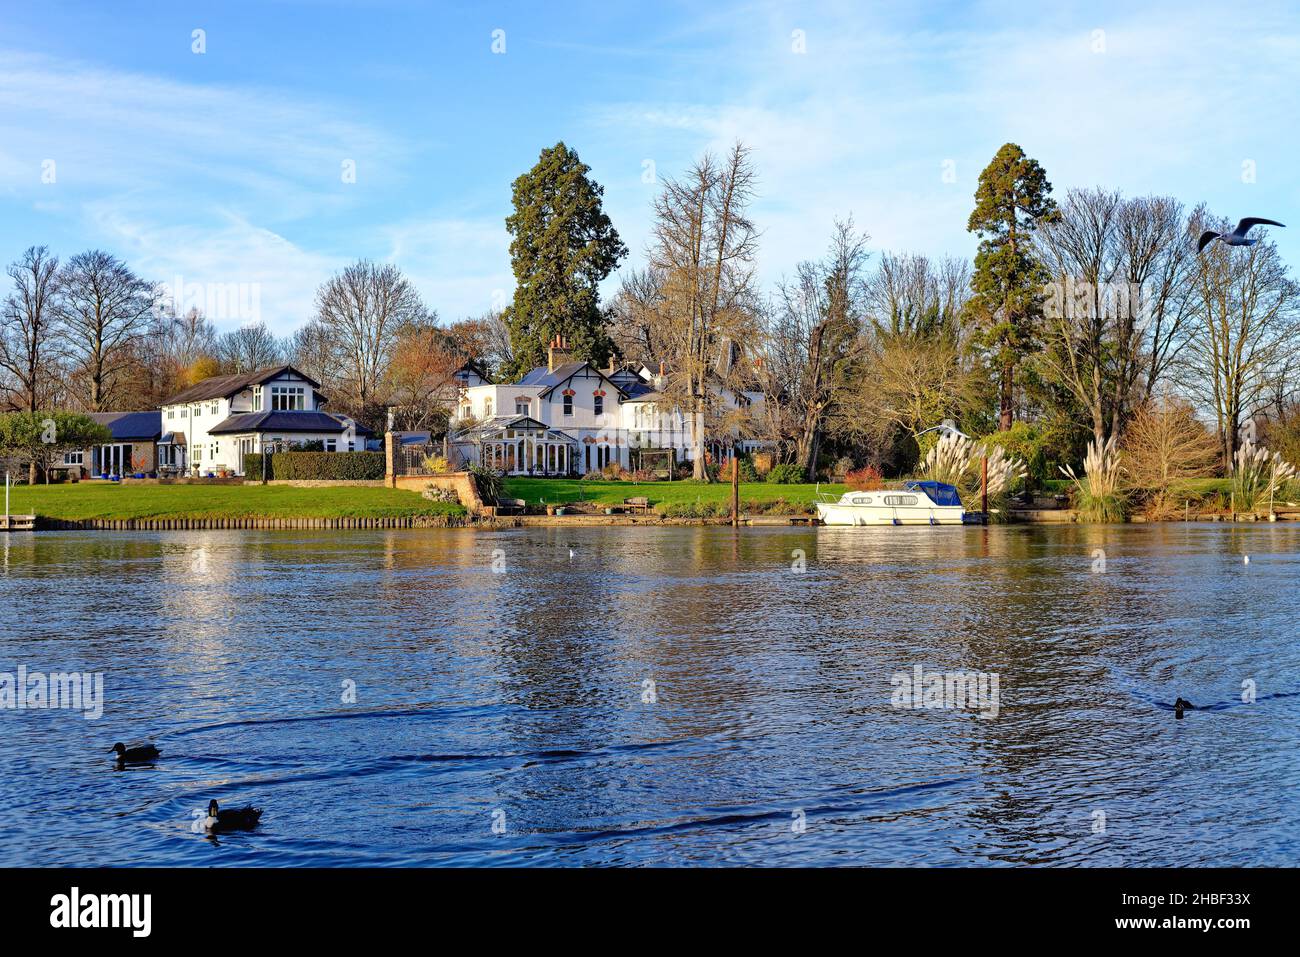 Élégante maison au bord de la rivière Thames à Shepperton, le jour d'automne ensoleillé Surrey Angleterre Royaume-Uni Banque D'Images